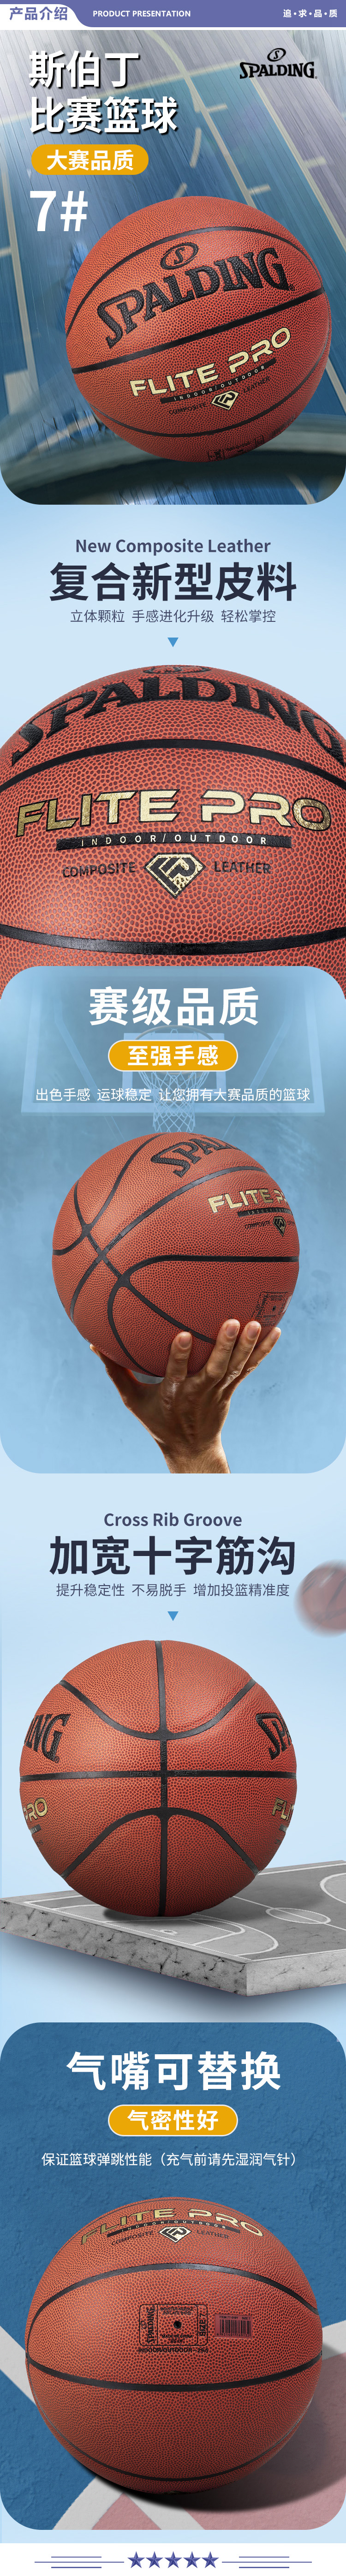 斯伯丁 77-510Y 篮球7号比赛PU金钻蓝球Flite PRO耐磨防滑室内外训练成人儿童蓝球 2.jpg